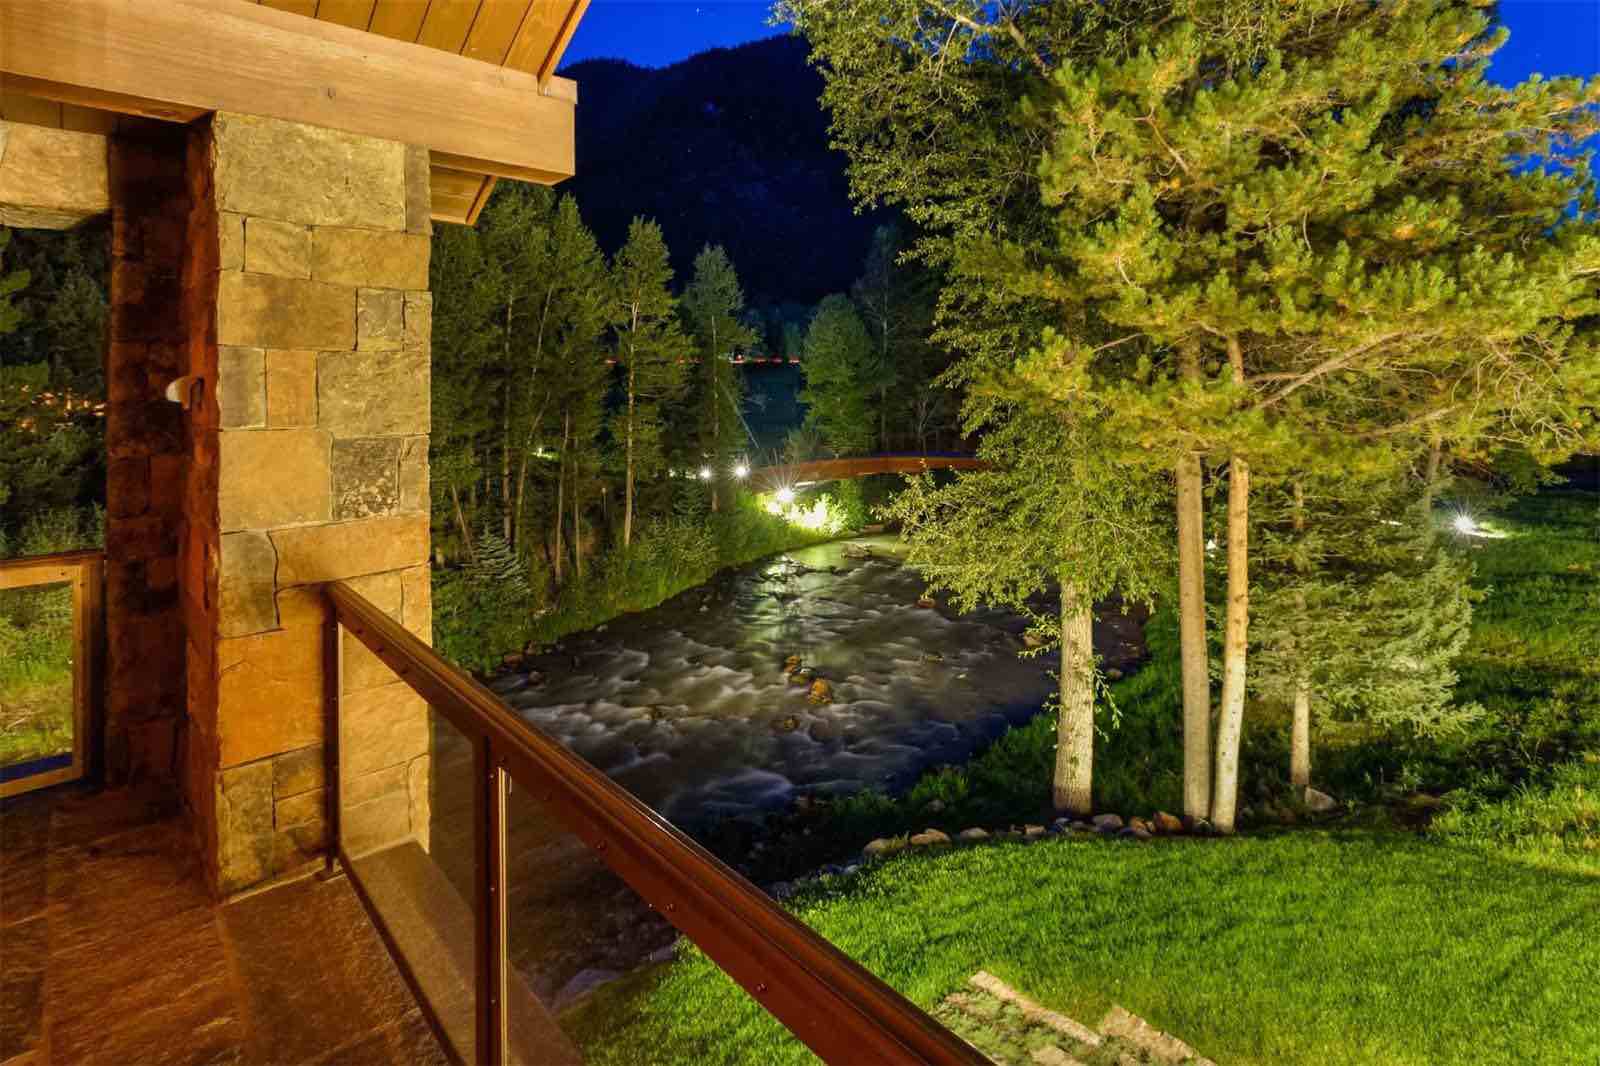 Lujosa mega propiedad recién construida a orillas de un río en Aspen, Colorado sale a la venta por $39,5 millones